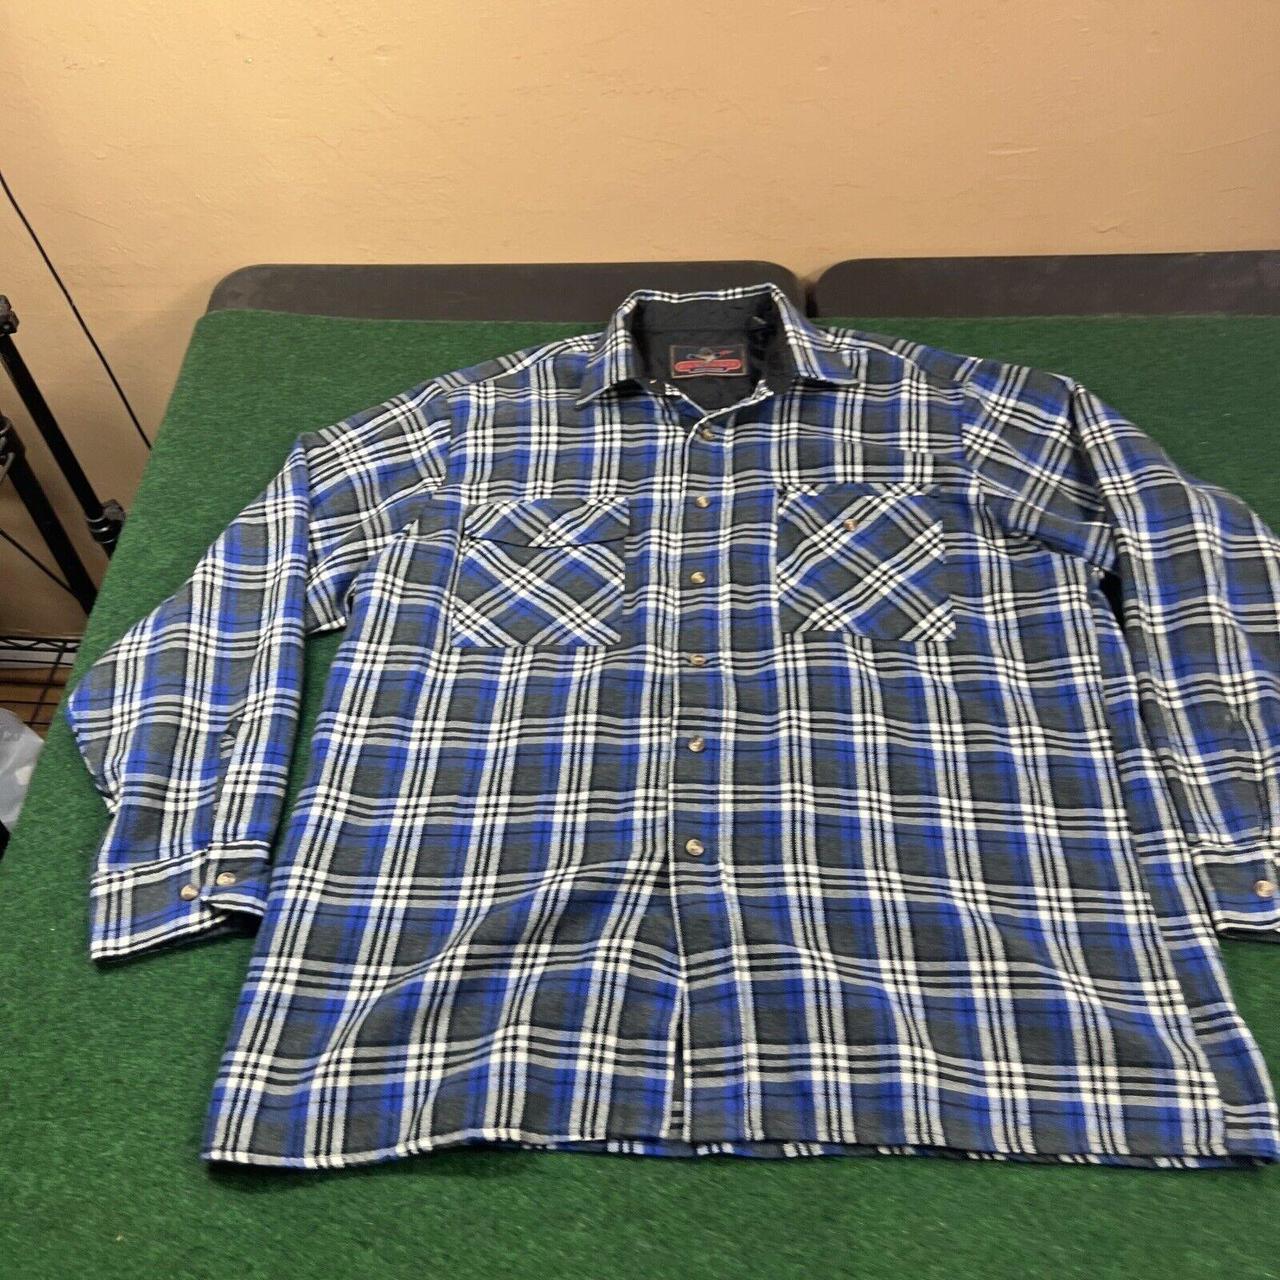 packer flannel shirt